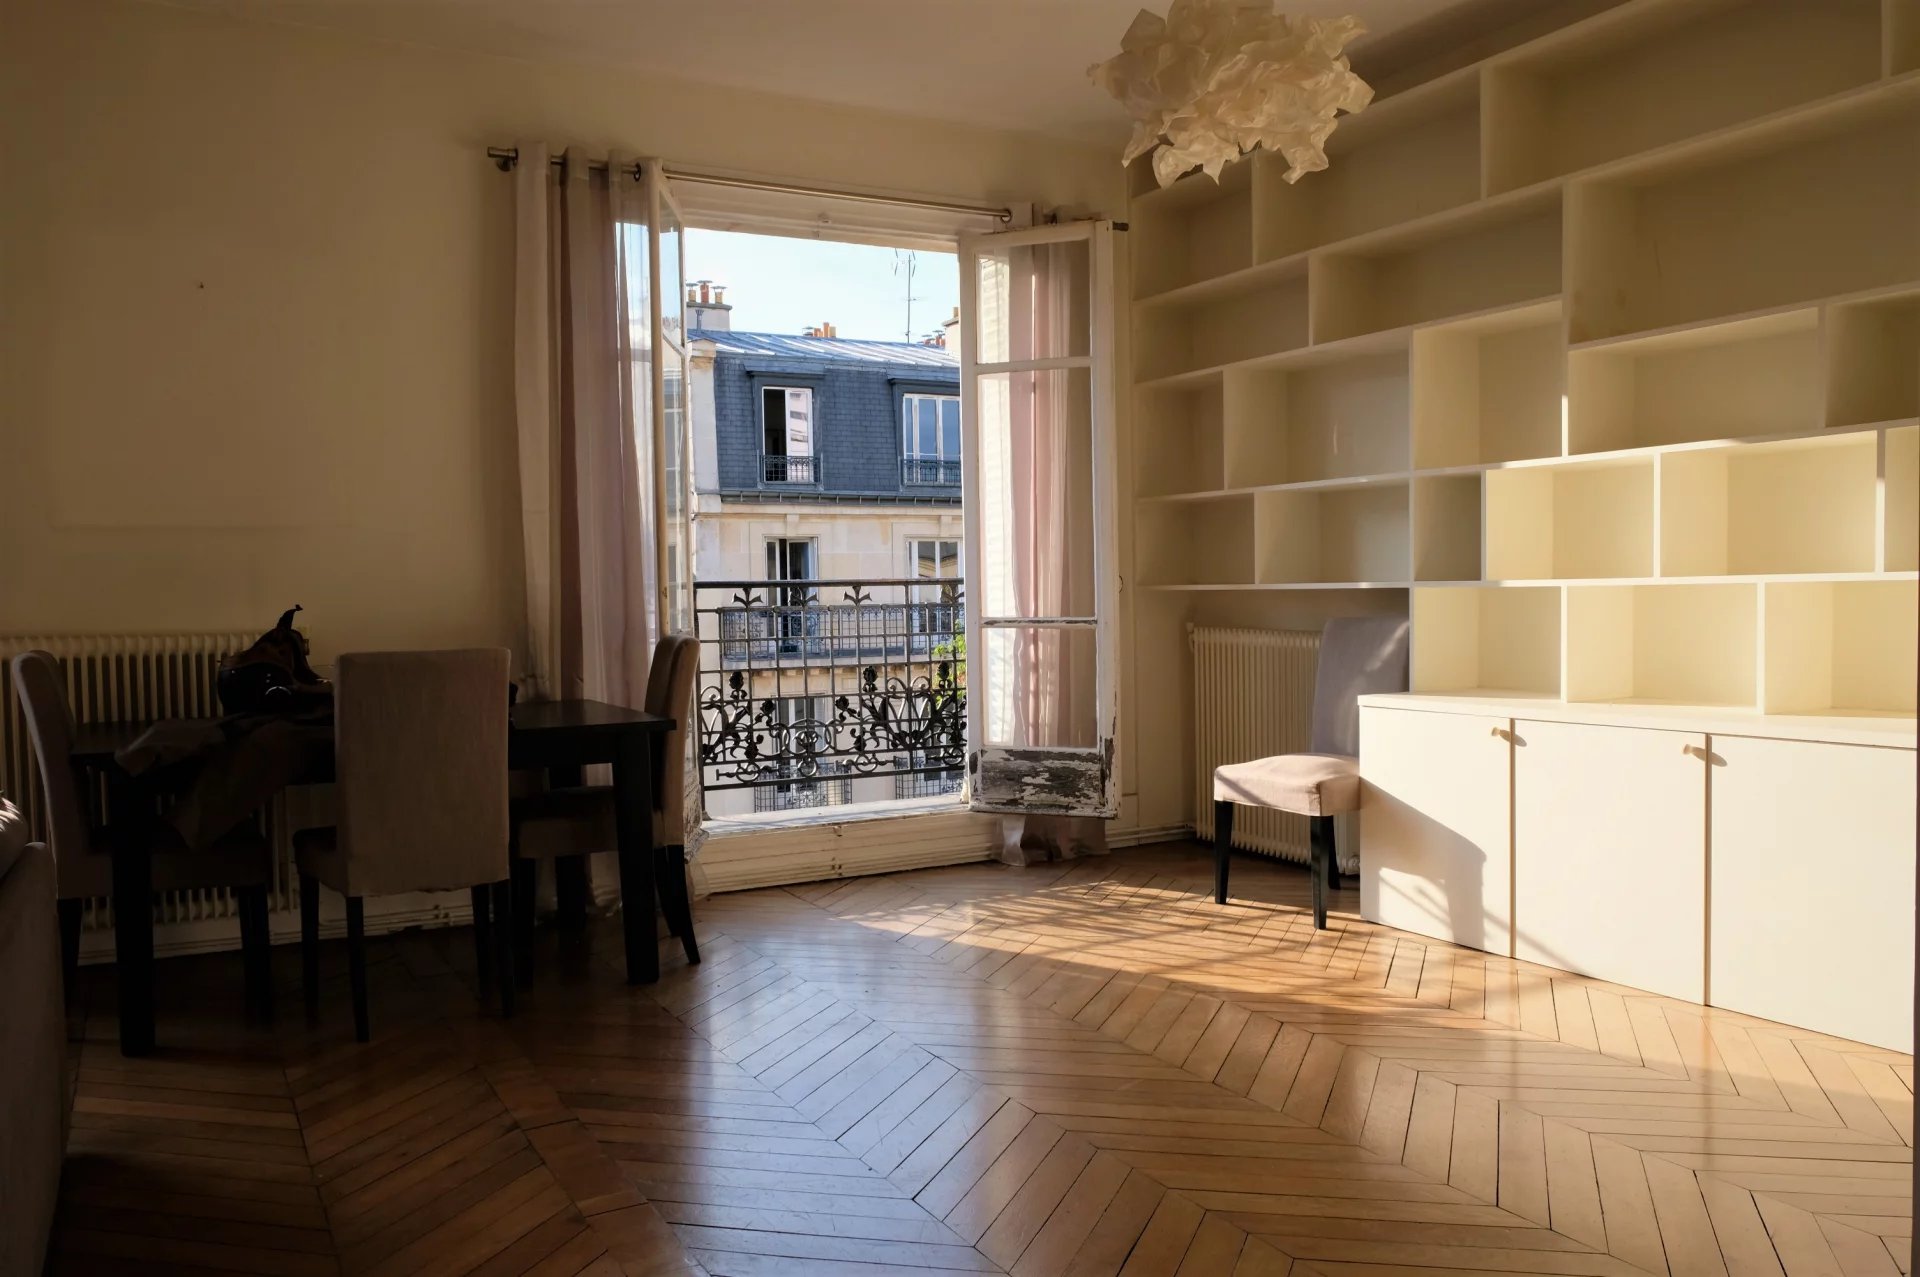 Sale Apartment - Paris 12th (Paris 12ème)